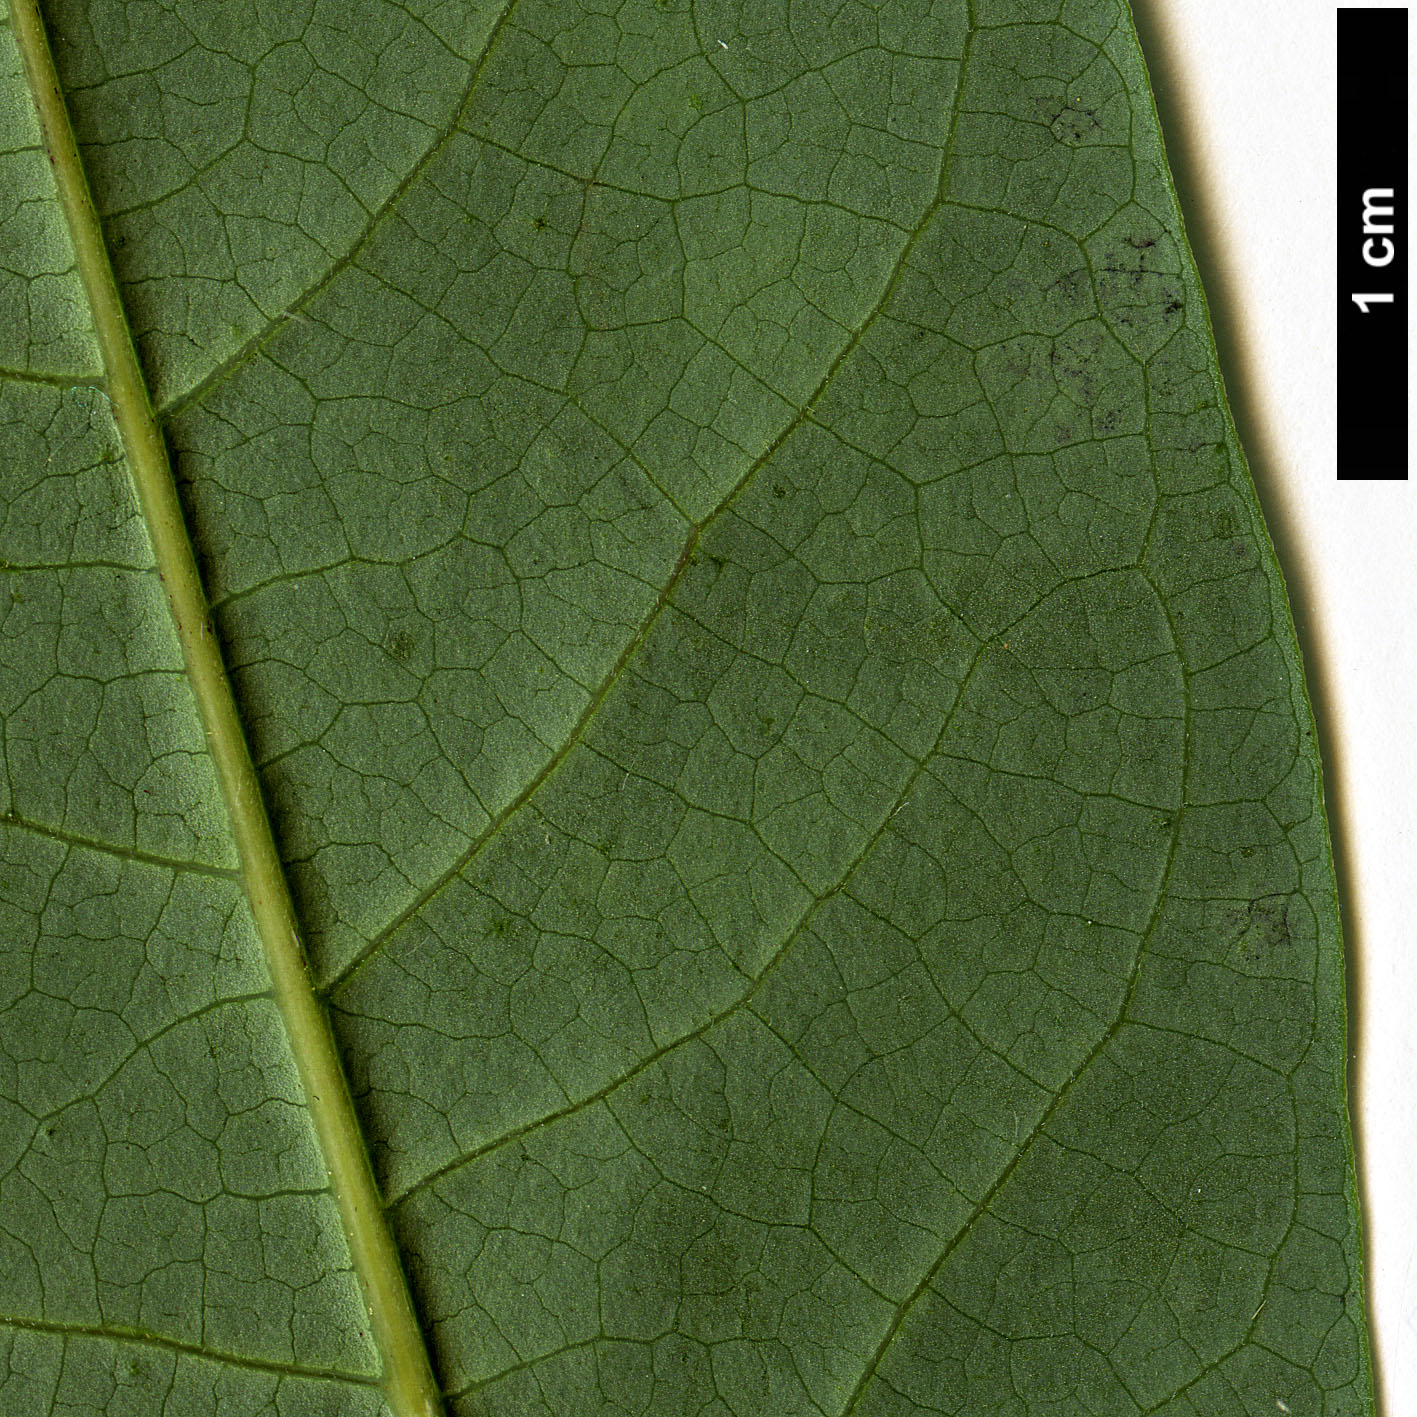 High resolution image: Family: Lauraceae - Genus: Litsea - Taxon: kingii